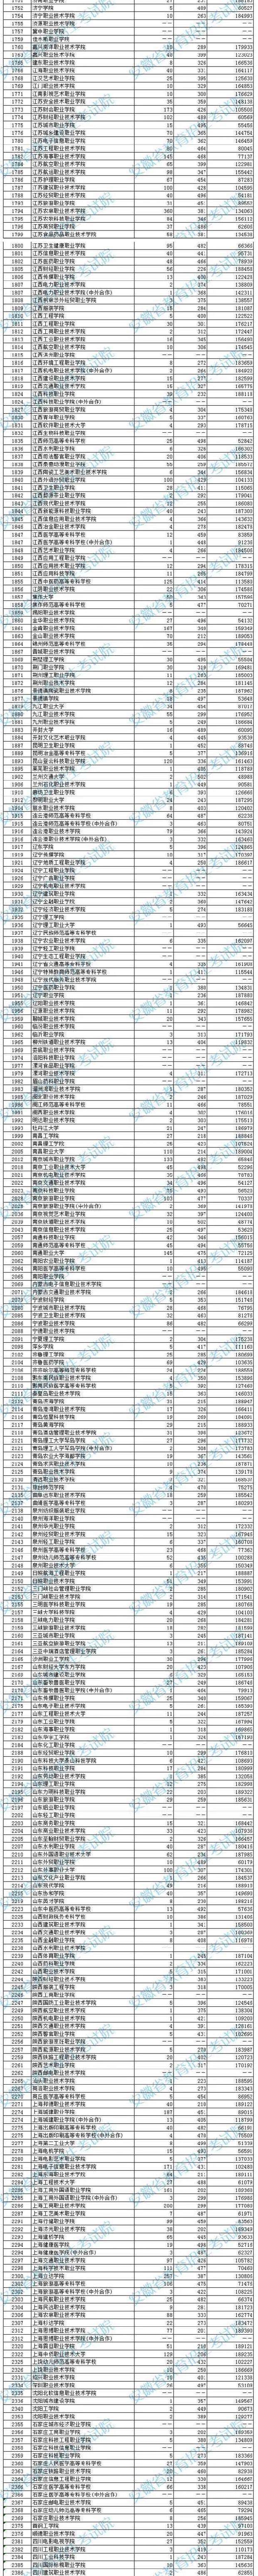 2020安徽专科院校文史类投档分数及院校排名一览表